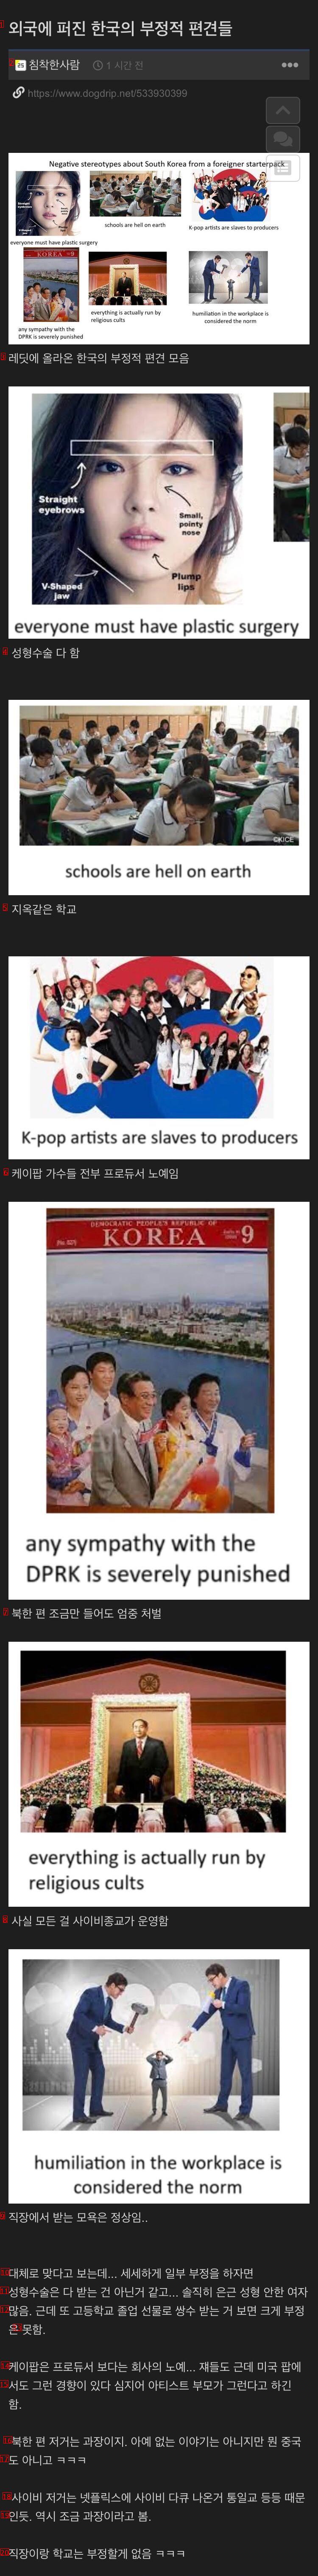 「反論不可」海外に広がった否定的な韓国イメージ